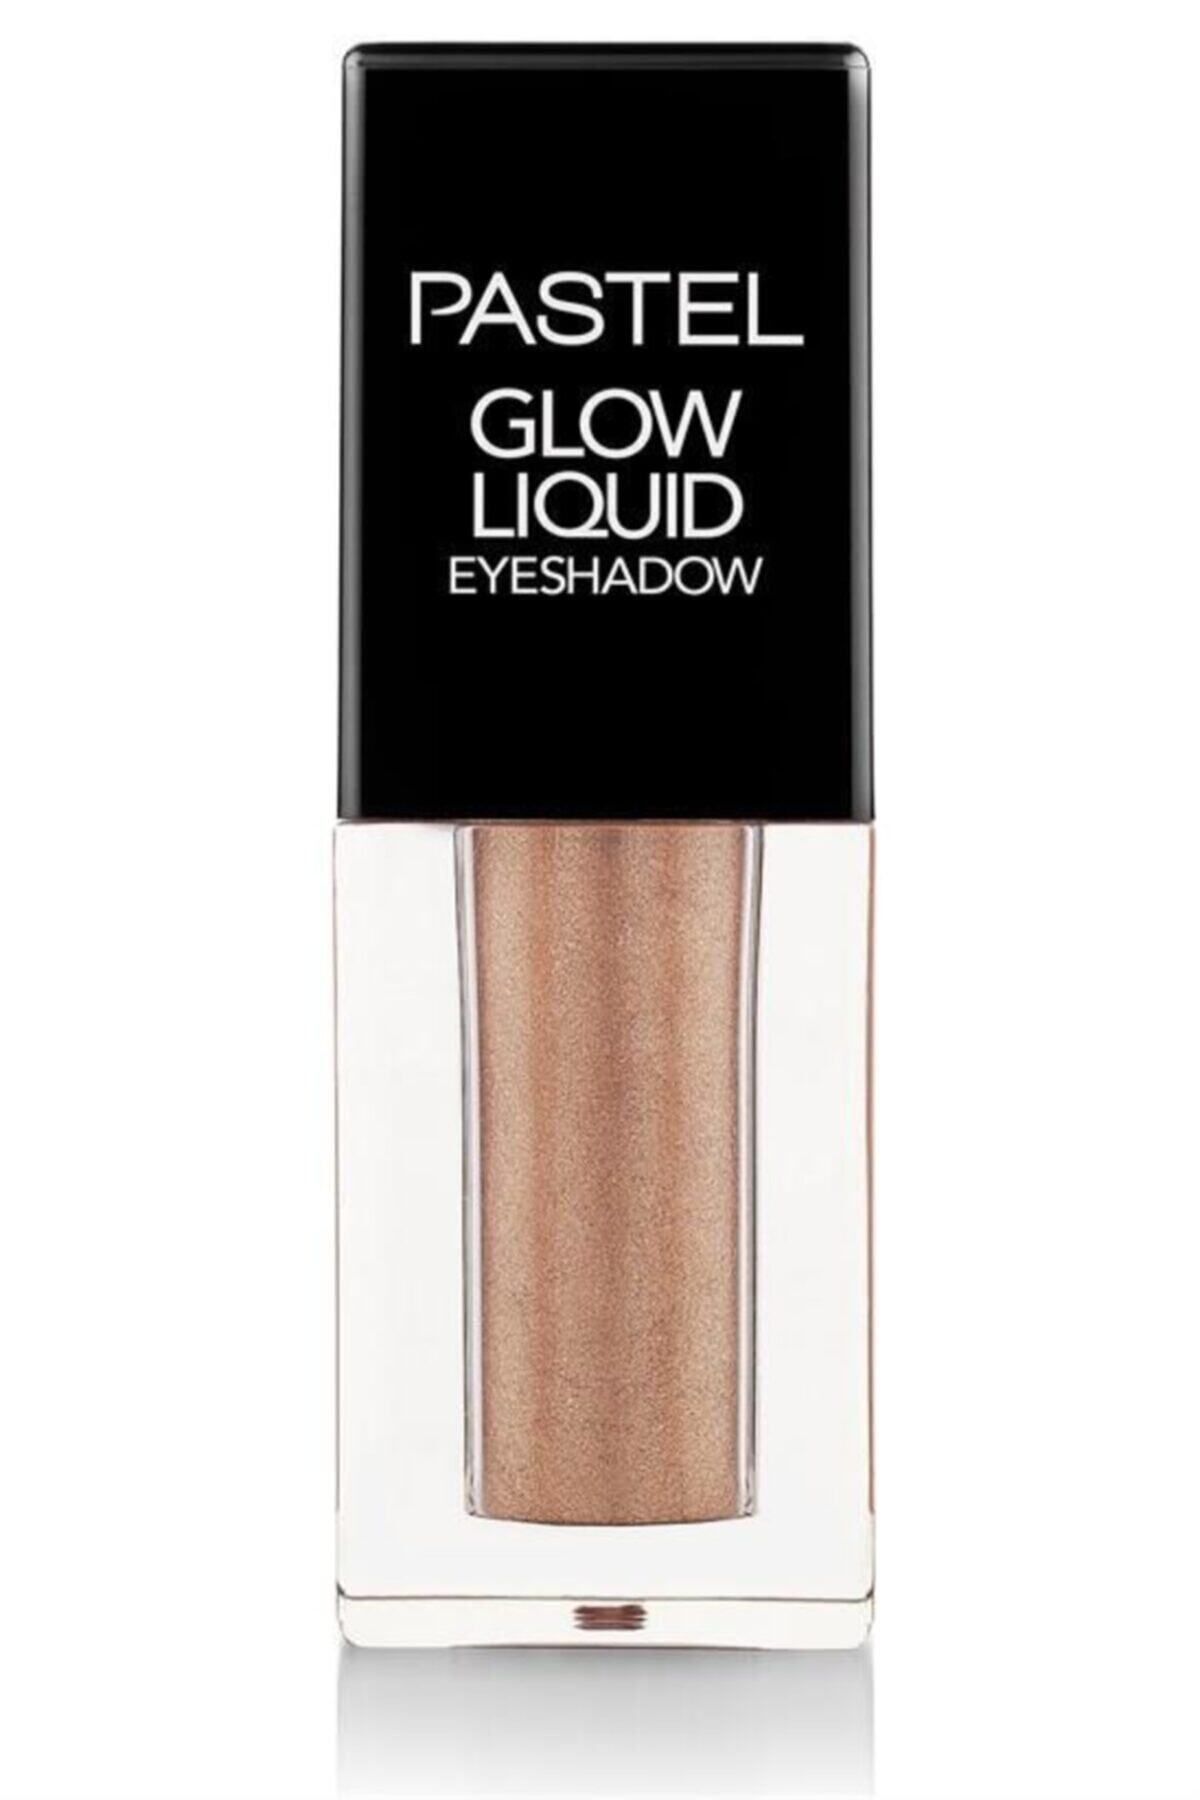 Pastel Glow Liquid Eyeshadow 222 Golden Care - Göz Farı